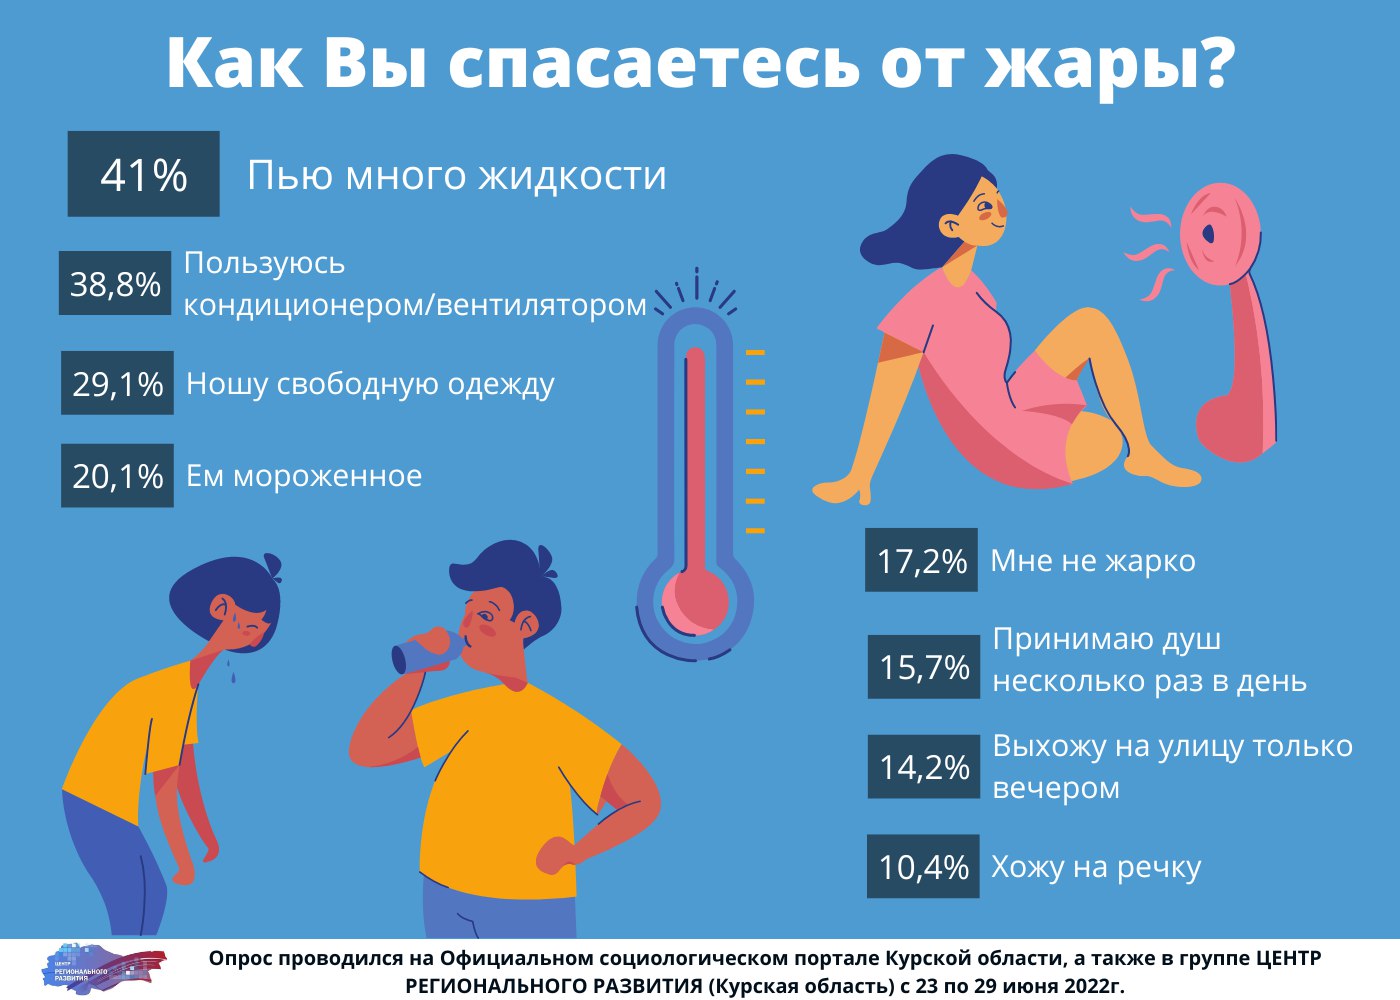 Пить горячее в жару. Инфографика про жару. Что пить в жару. Что нужно пить в жаркую погоду. Питье в жару инфографика роспотреб.